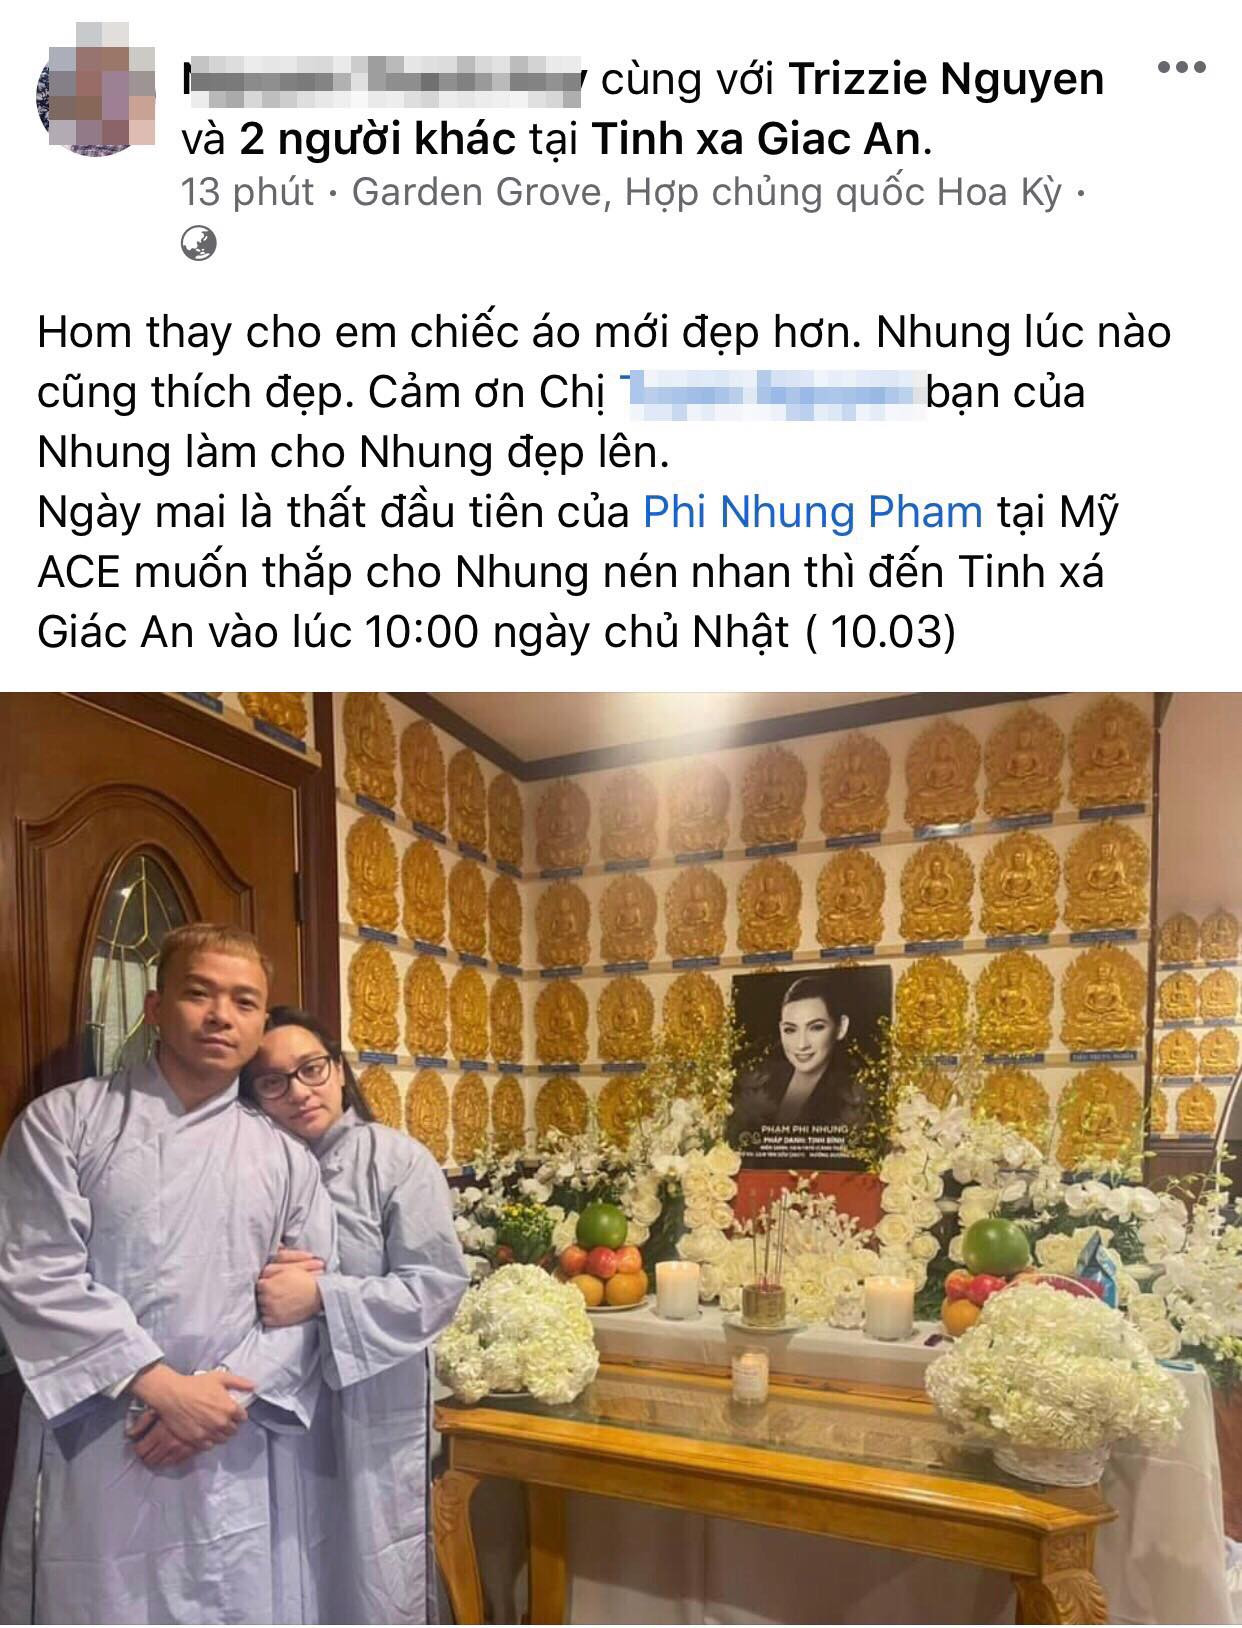 Con gái ca sĩ Phi Nhung tại Mỹ đã lập bàn thờ cúng thất cho mẹ đầu ở chùa.